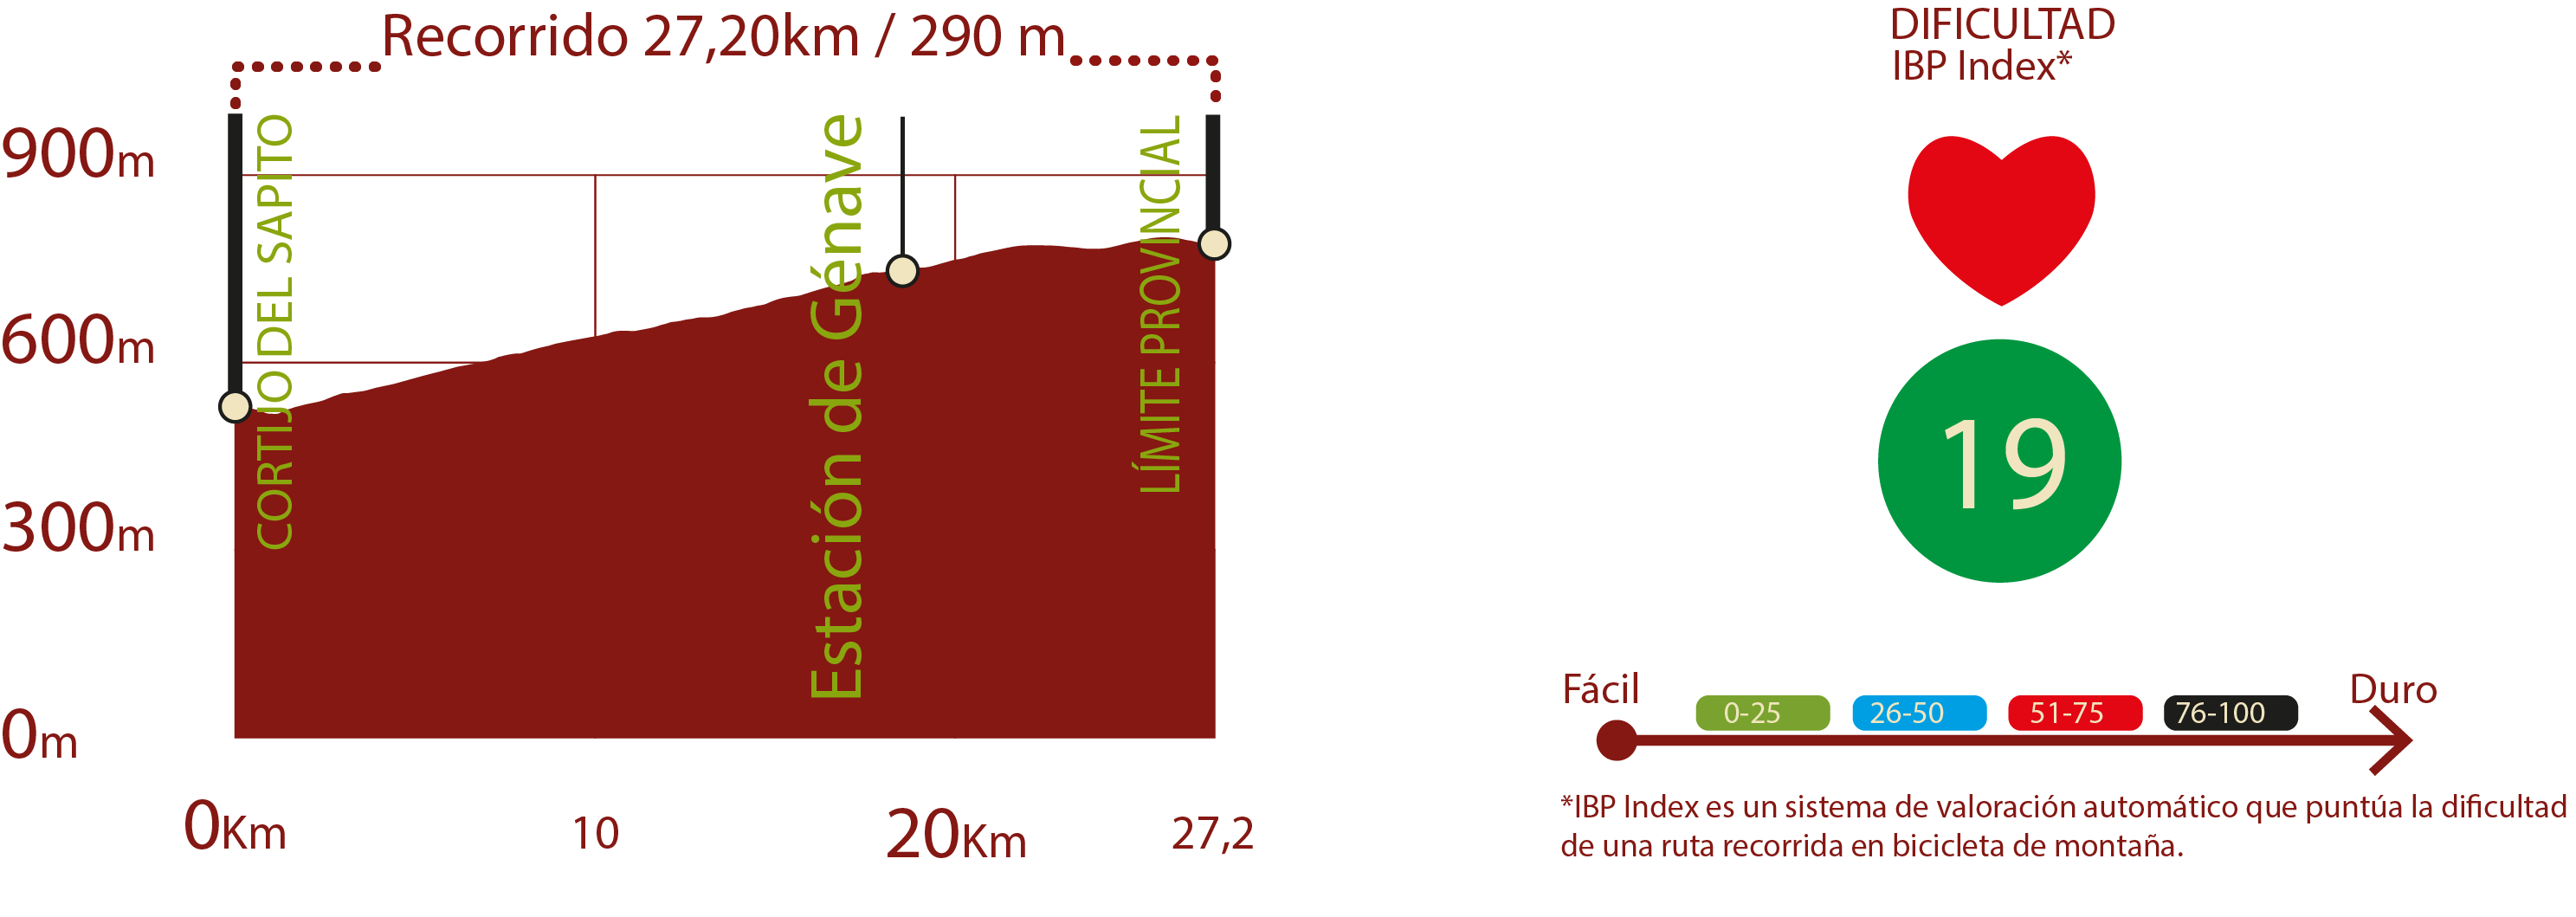 Perfil e IBP
Perfil del recorrido del CN de Segura: 27,20 km / Desnivel de subida 290 m
IBP 19: Fácil

